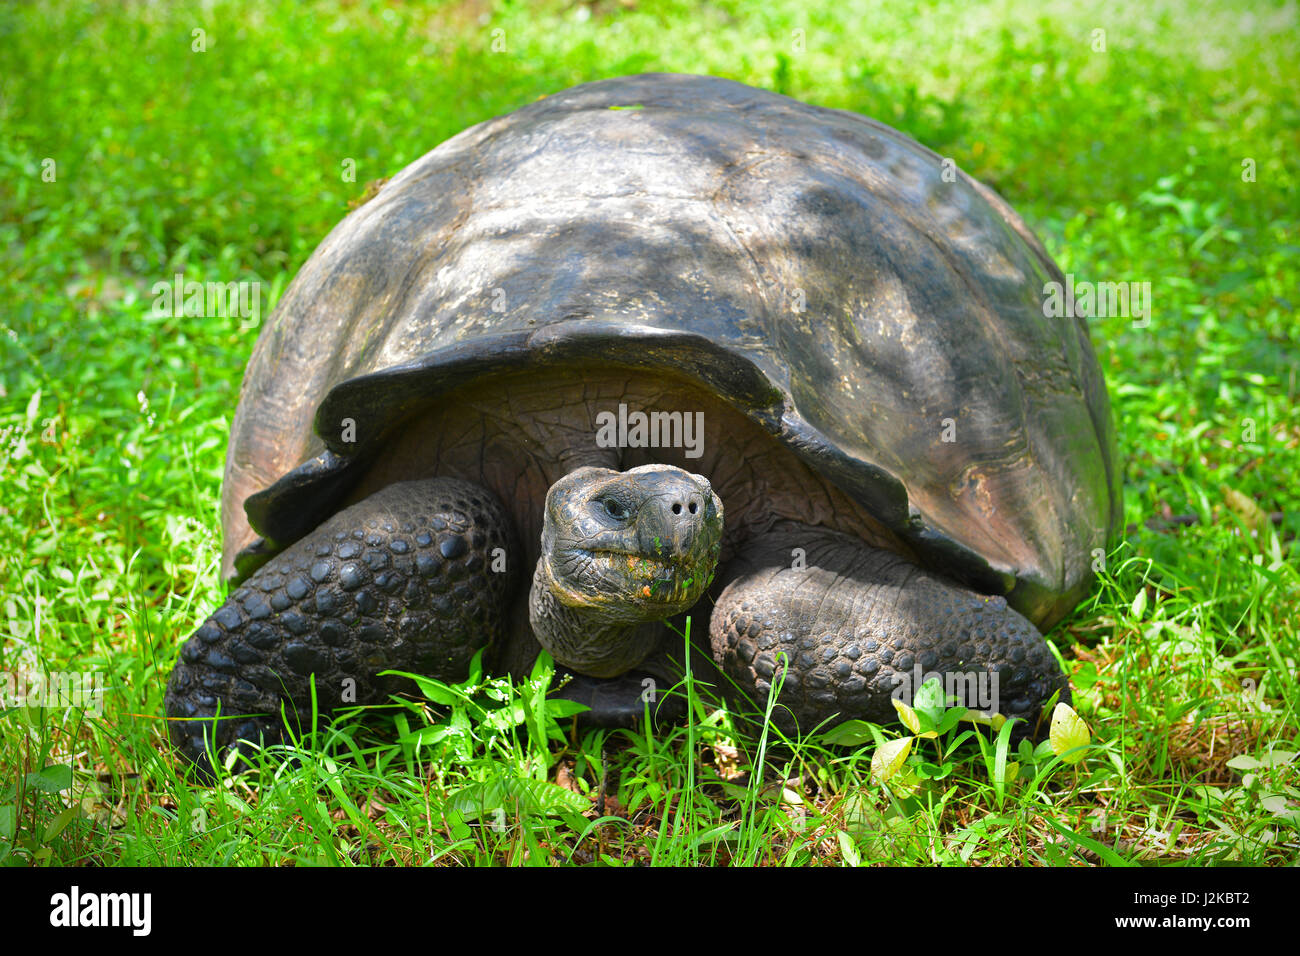 Gros plan portrait d'une tortue géante Galapagos (Chelonoidis nigra) mangeant de l'herbe sur l'île de Santa Cruz, parc national de Galapagos, Équateur. Banque D'Images